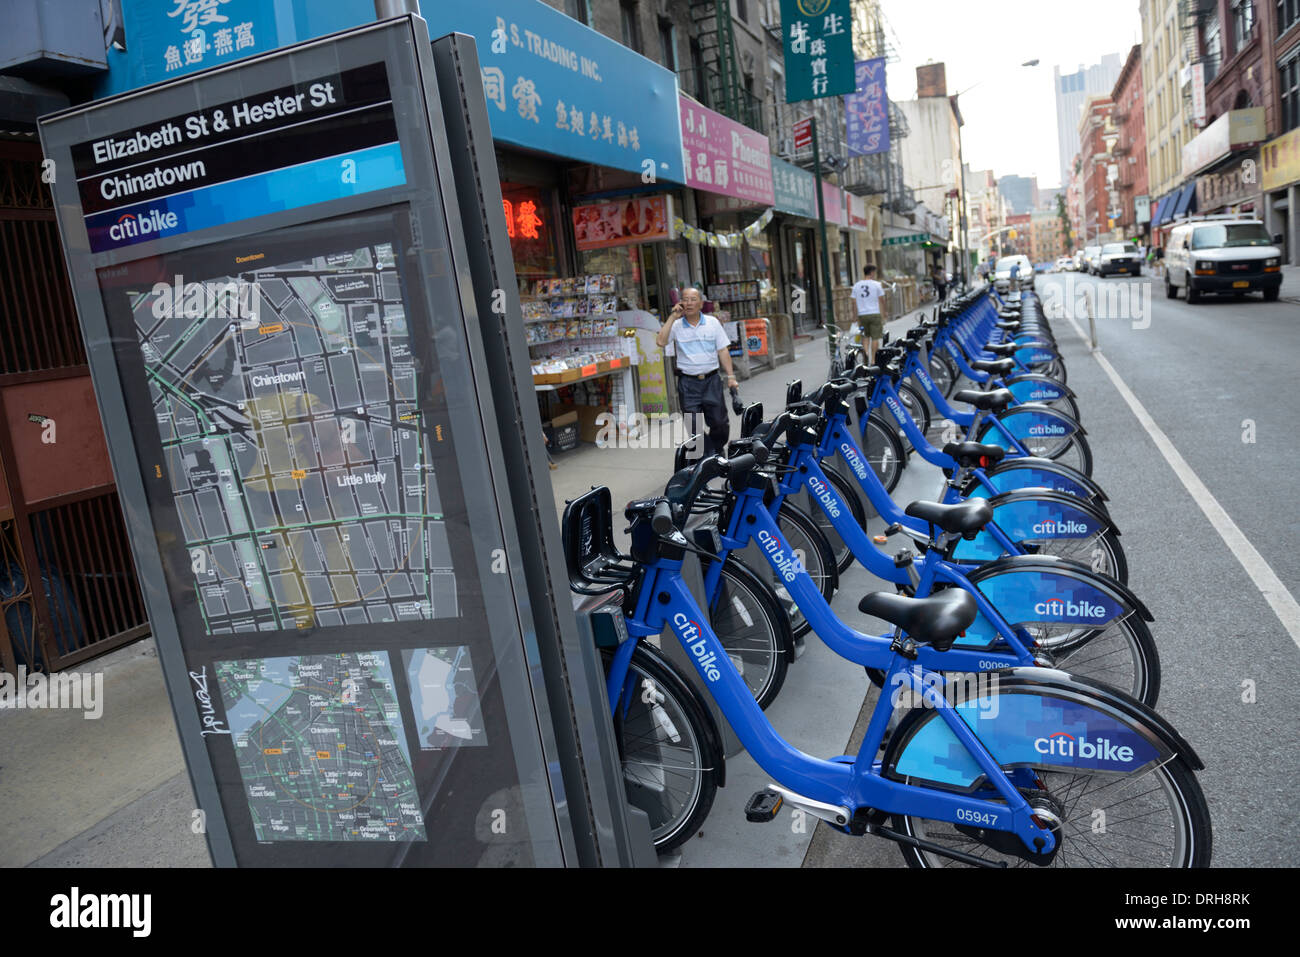 Chinatown Citibike (bike sharing) stand, New York Stock Photo